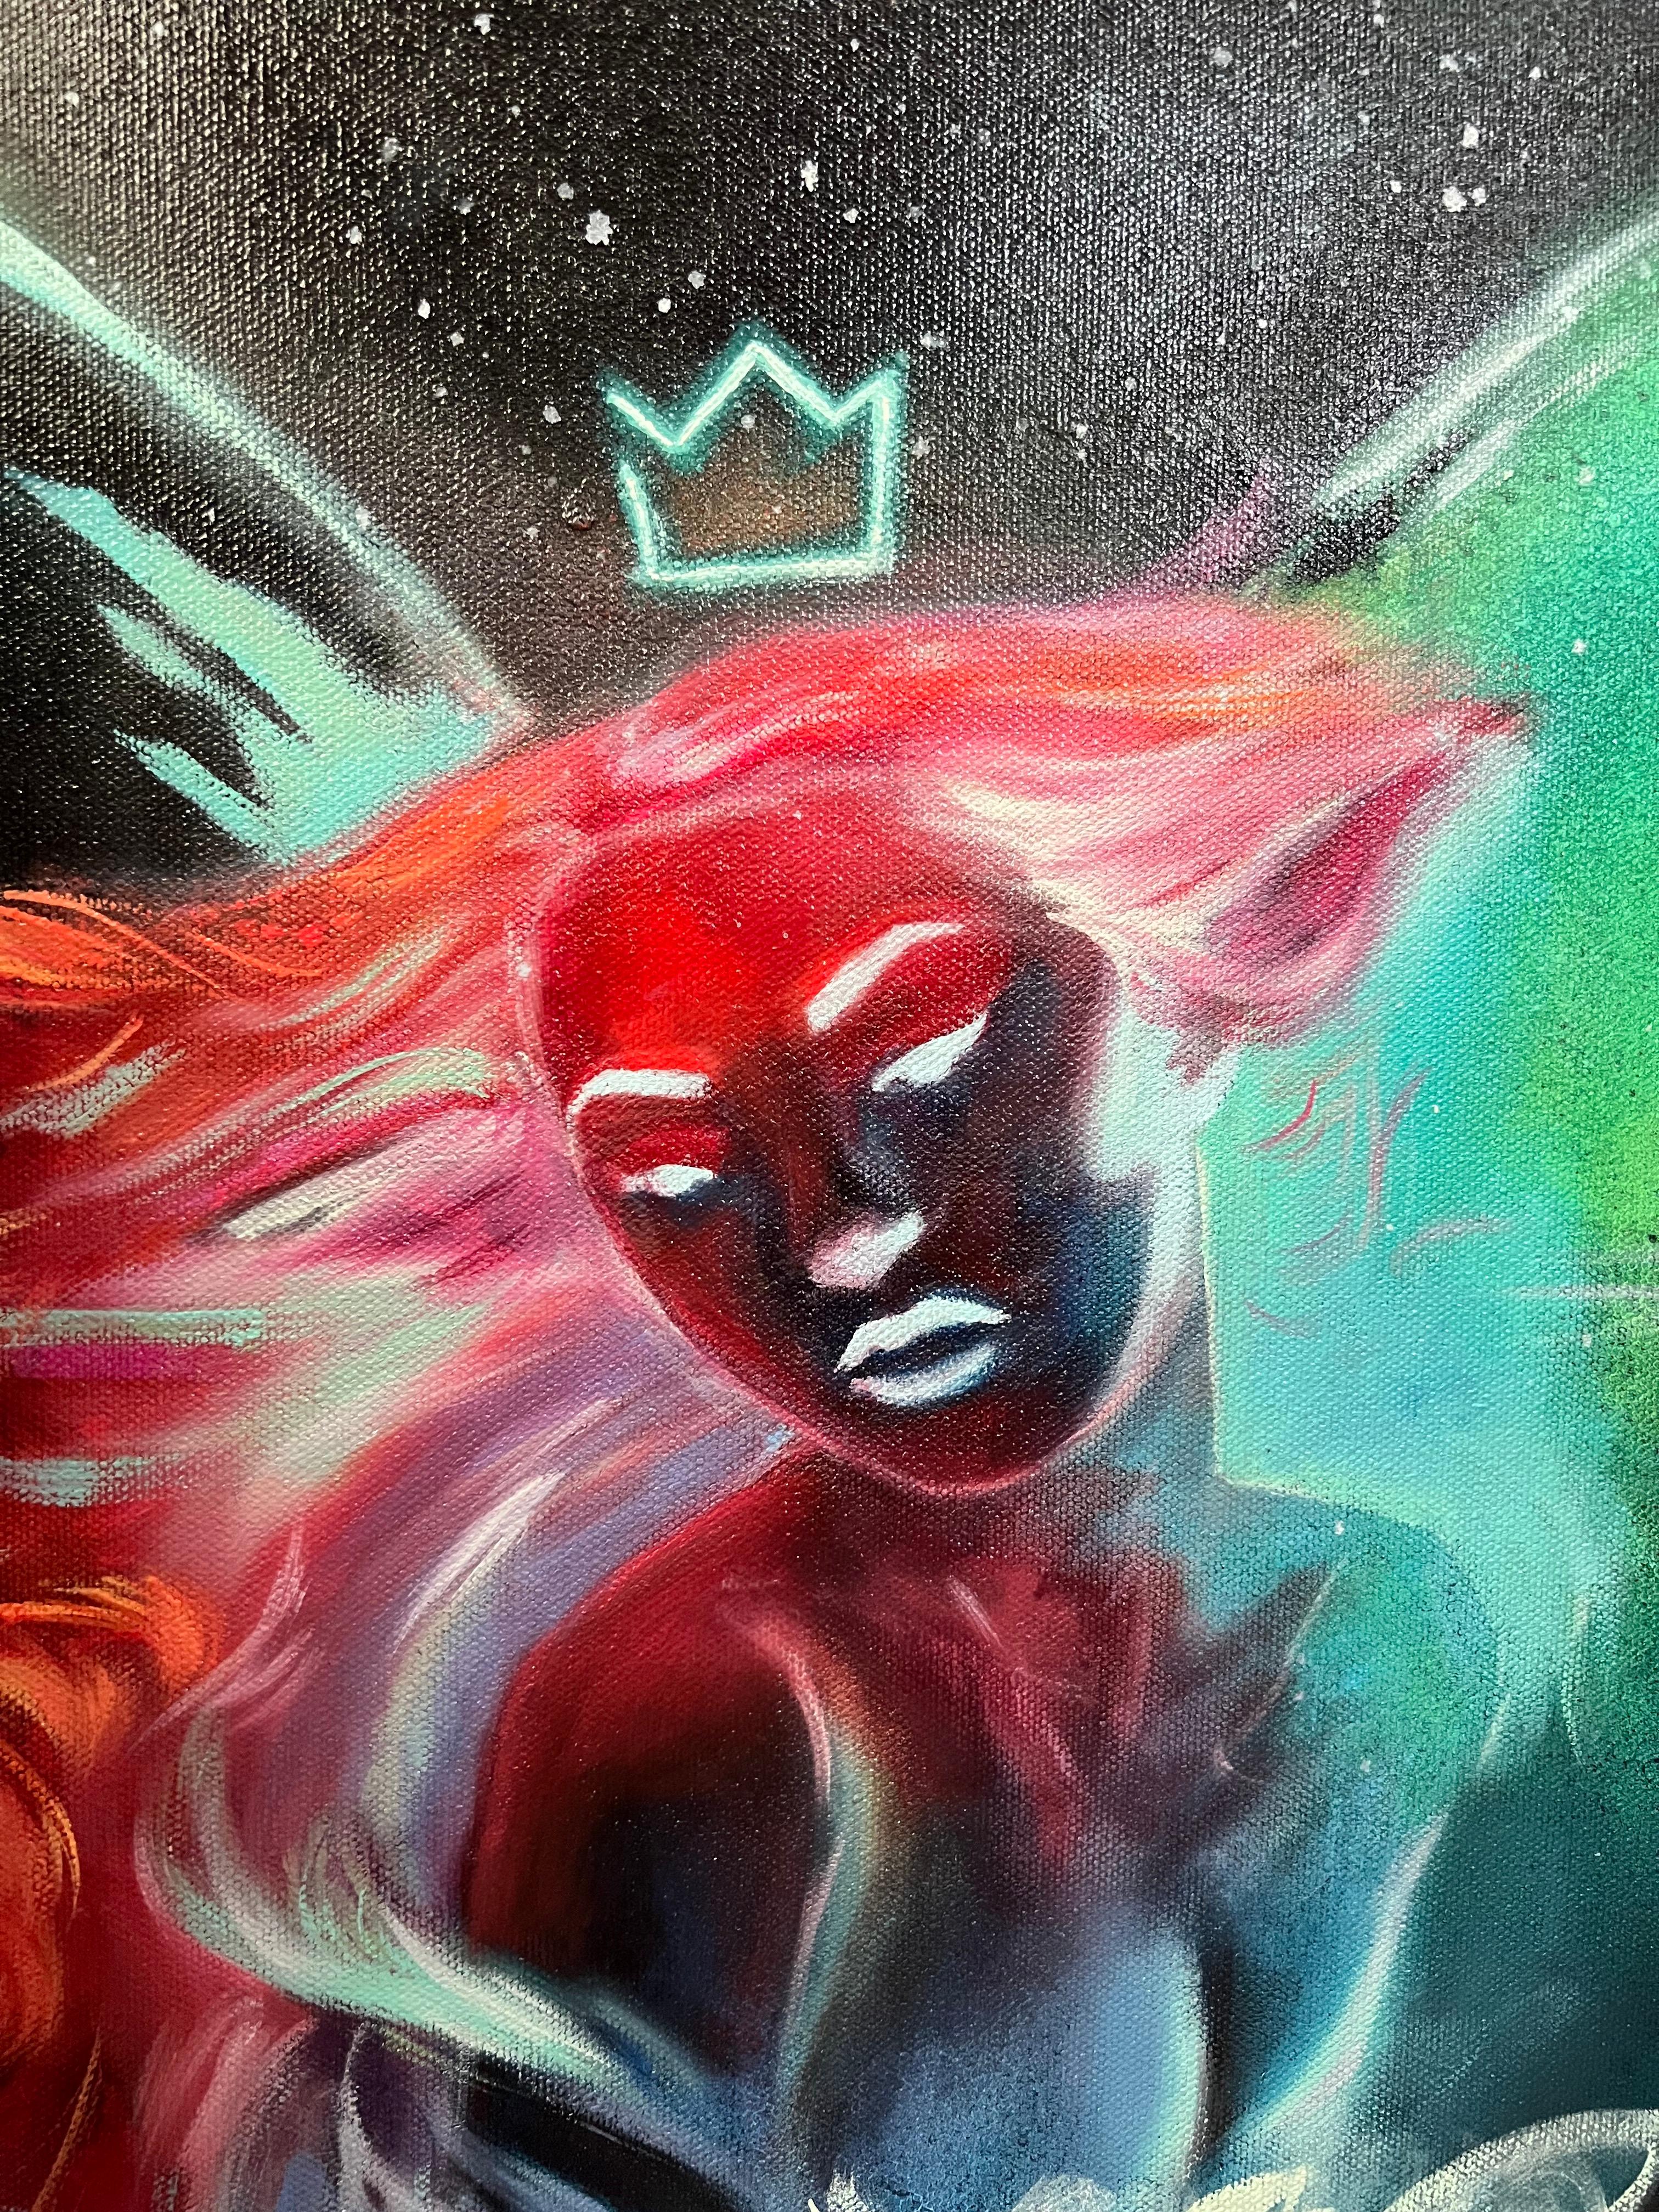 <p>Kommentare der Künstlerin<br>Die Künstlerin Miranda Gamel stellt ein ätherisches Wesen mit einer leuchtenden Krone und Flügeln dar. Sternennebel und Lichtstrahlen umgeben sie in schillernden prismatischen Farben. Die nackte Figur schimmert mit